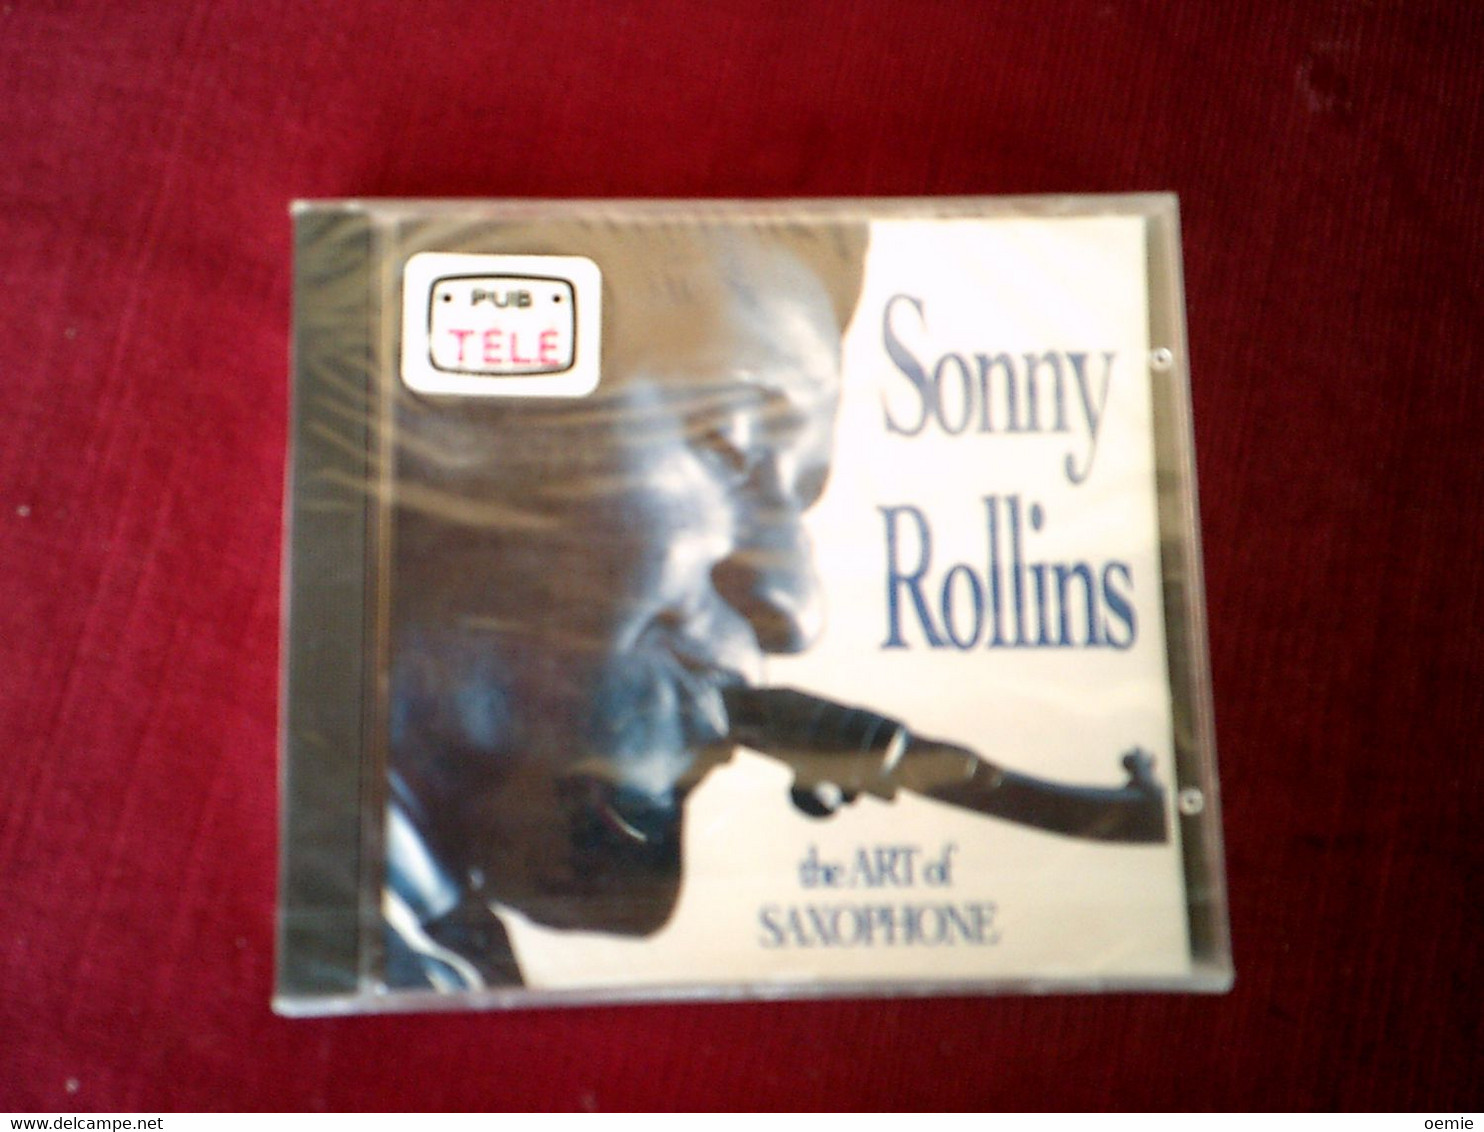 COLLECTION DE 4 CD ALBUM DE JAZZ ° SONNY ROLLINS + MARCUS ROBERTS + ROBERT NIGHTHWK + SAM COOKE - Complete Collections